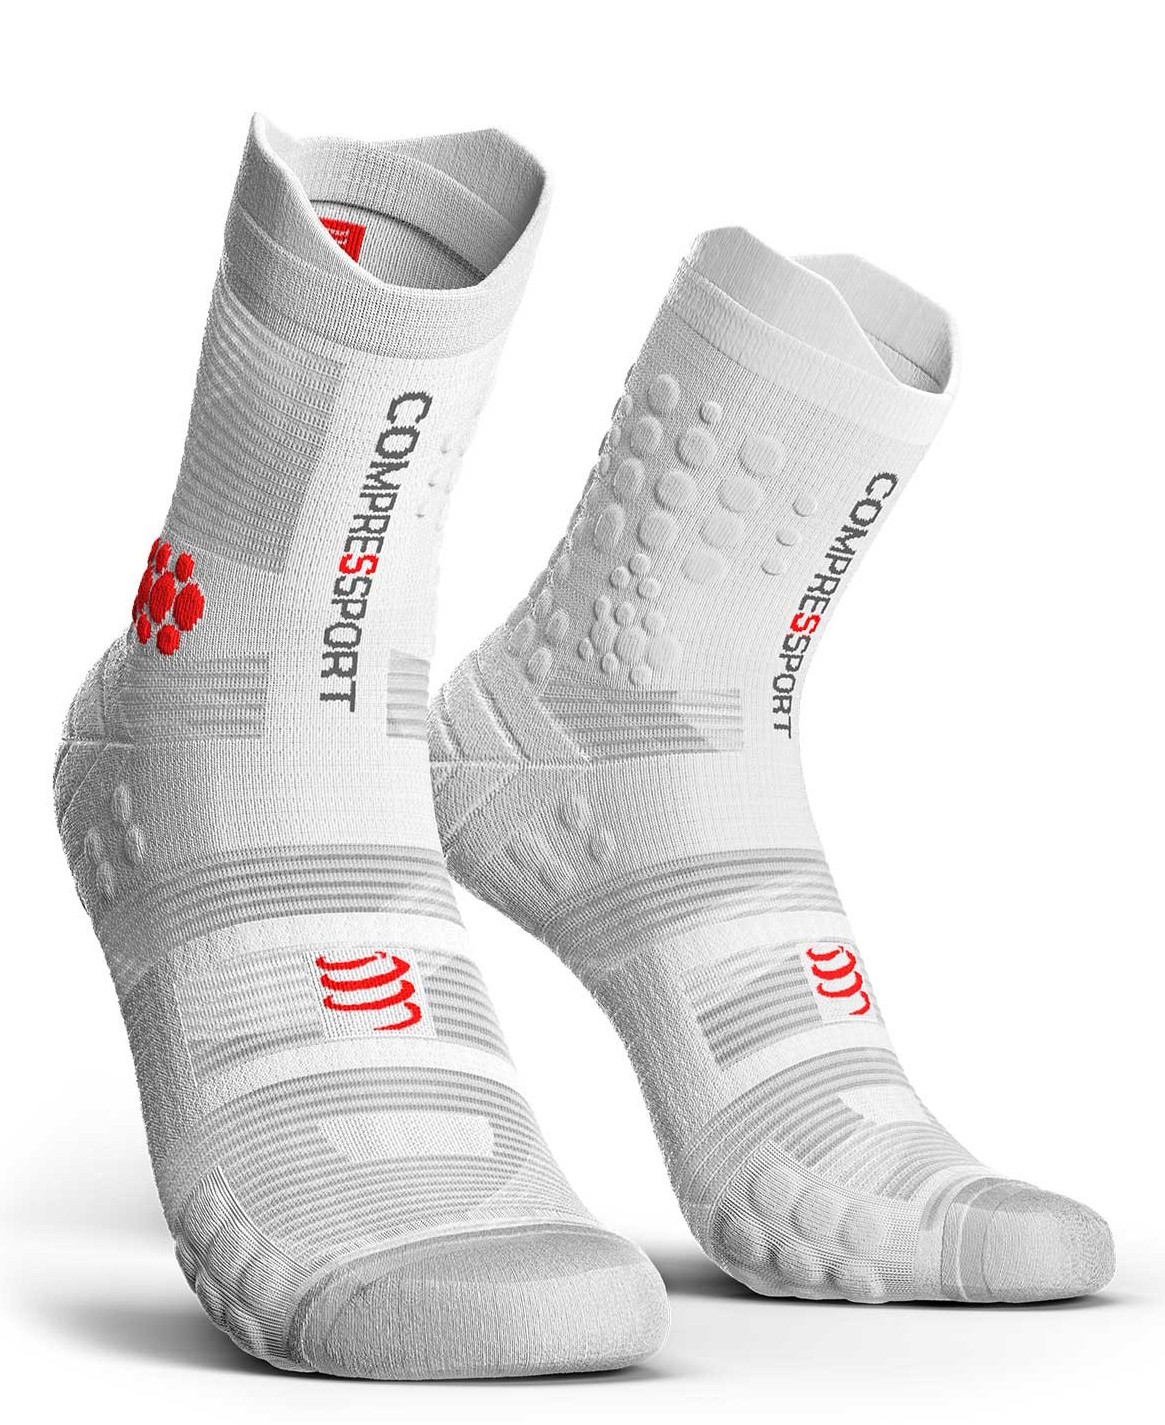 Compressport - Pro Racing Socks V 3.0 Trail - Calcetines de trail running - Hombre